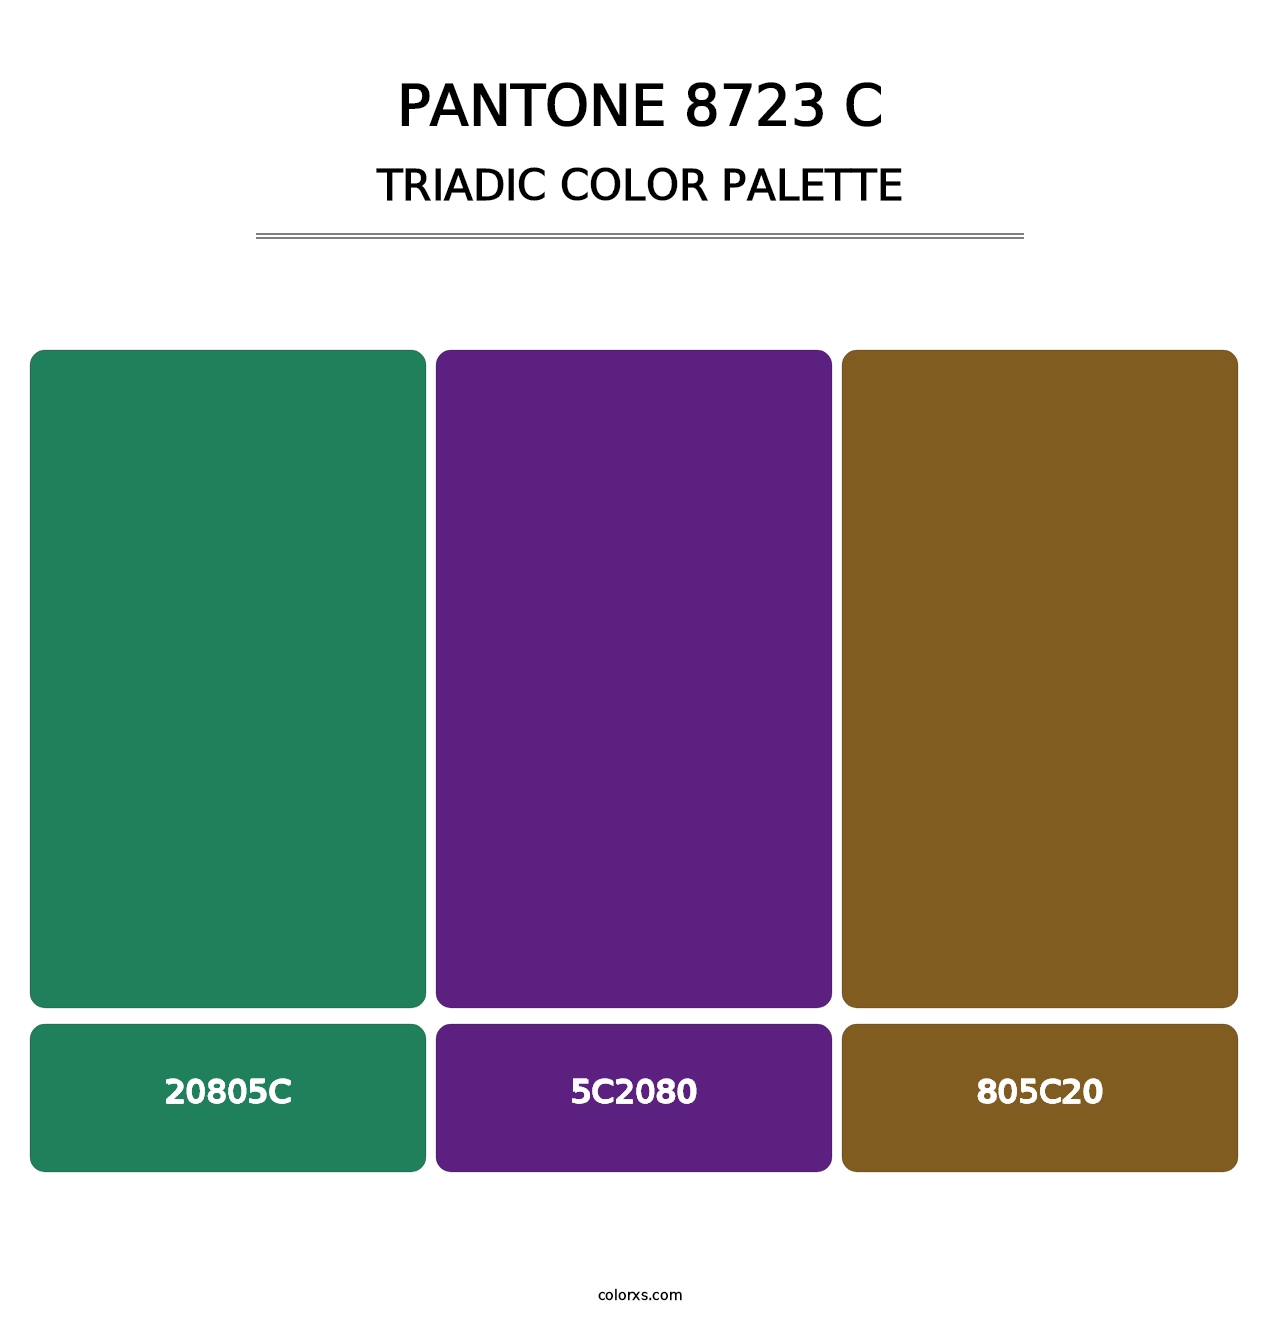 PANTONE 8723 C - Triadic Color Palette